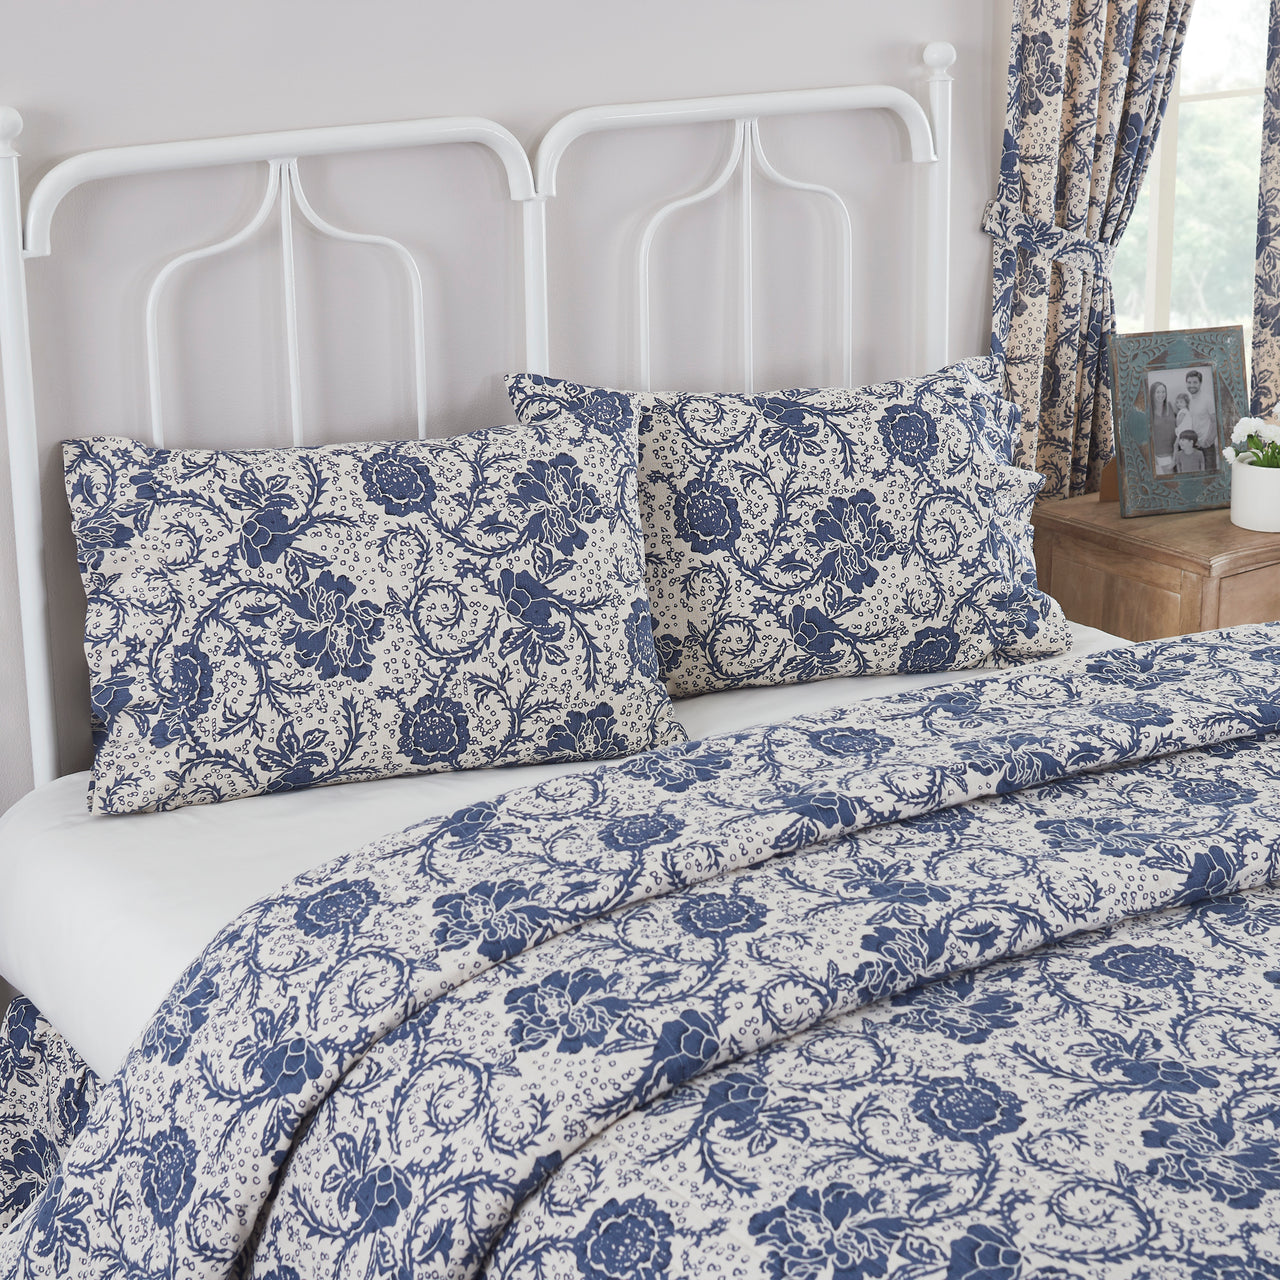 Dorset Navy Floral Ruffled Standard Pillow Case Set of 2 21x26+4 VHC Brands